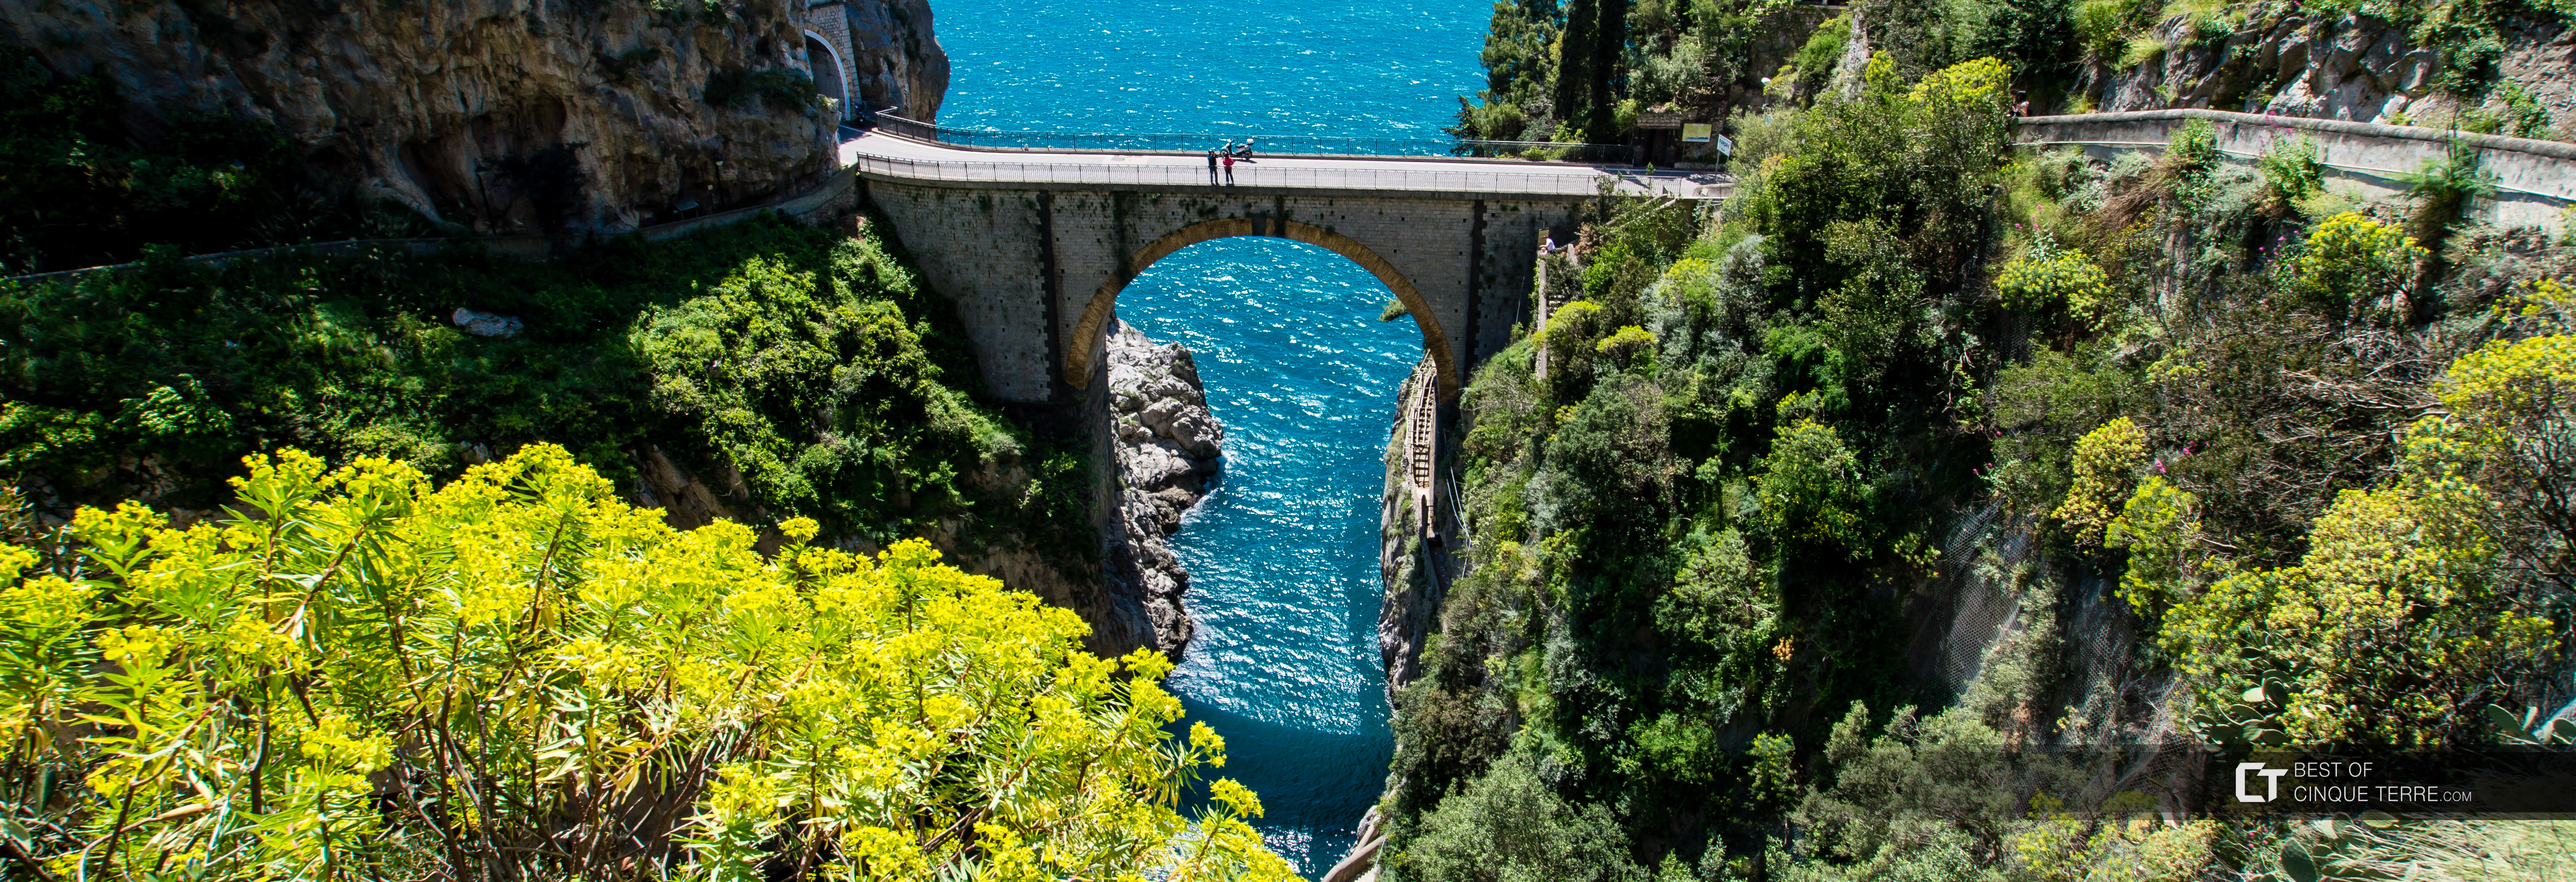 Fiordo di Furore, Wybrzeże Amalfitańskie, Włochy